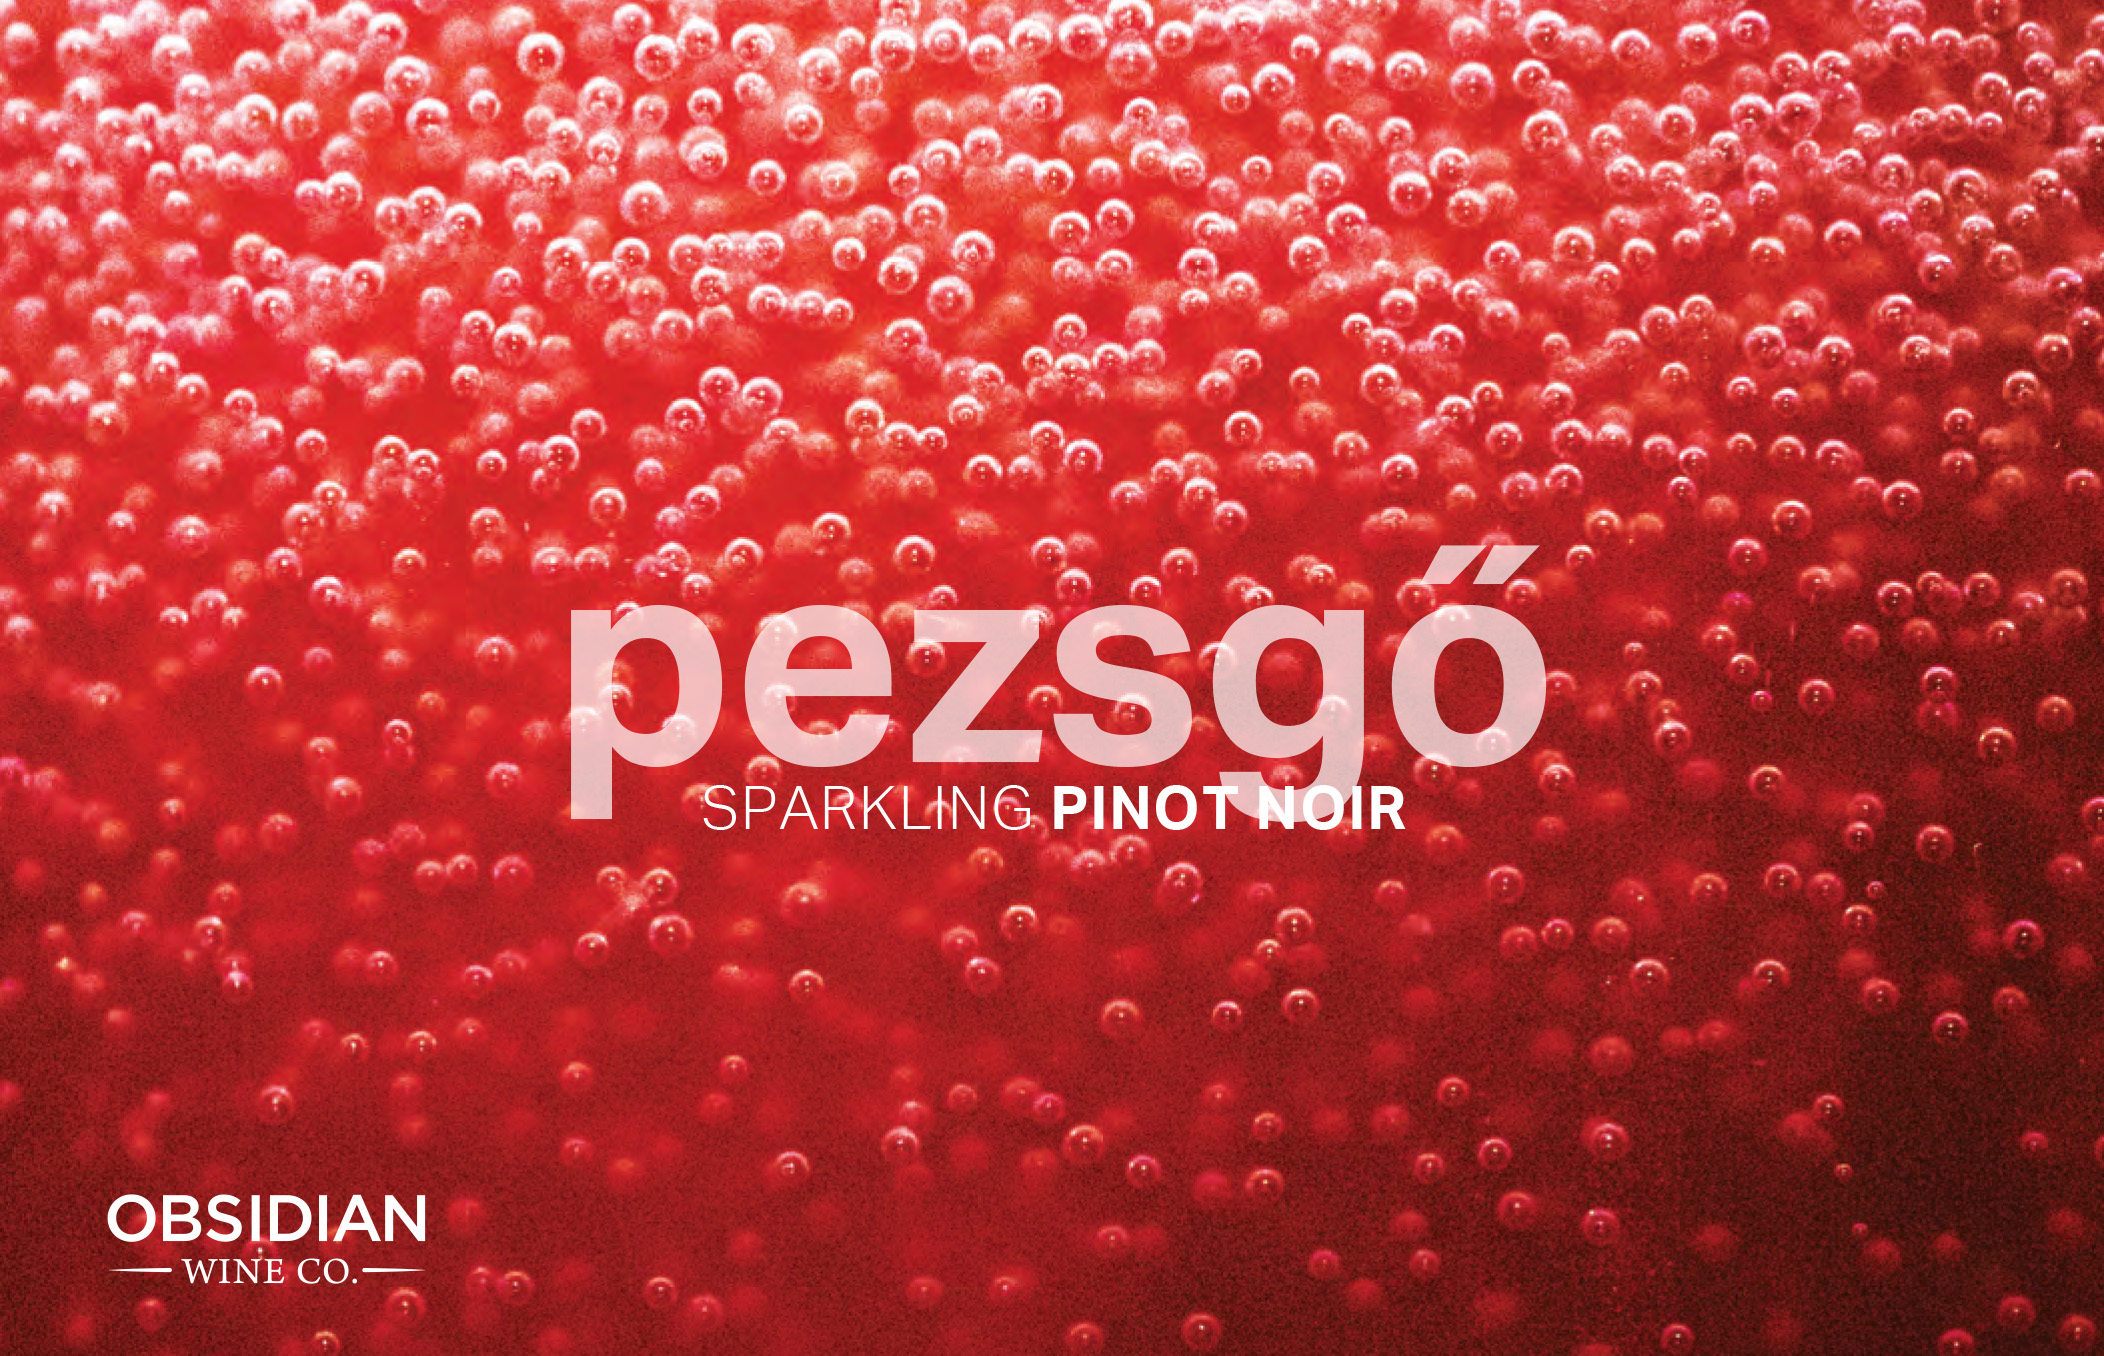 Pezsgö (Pej-guh) Sparkling Pinot Noir